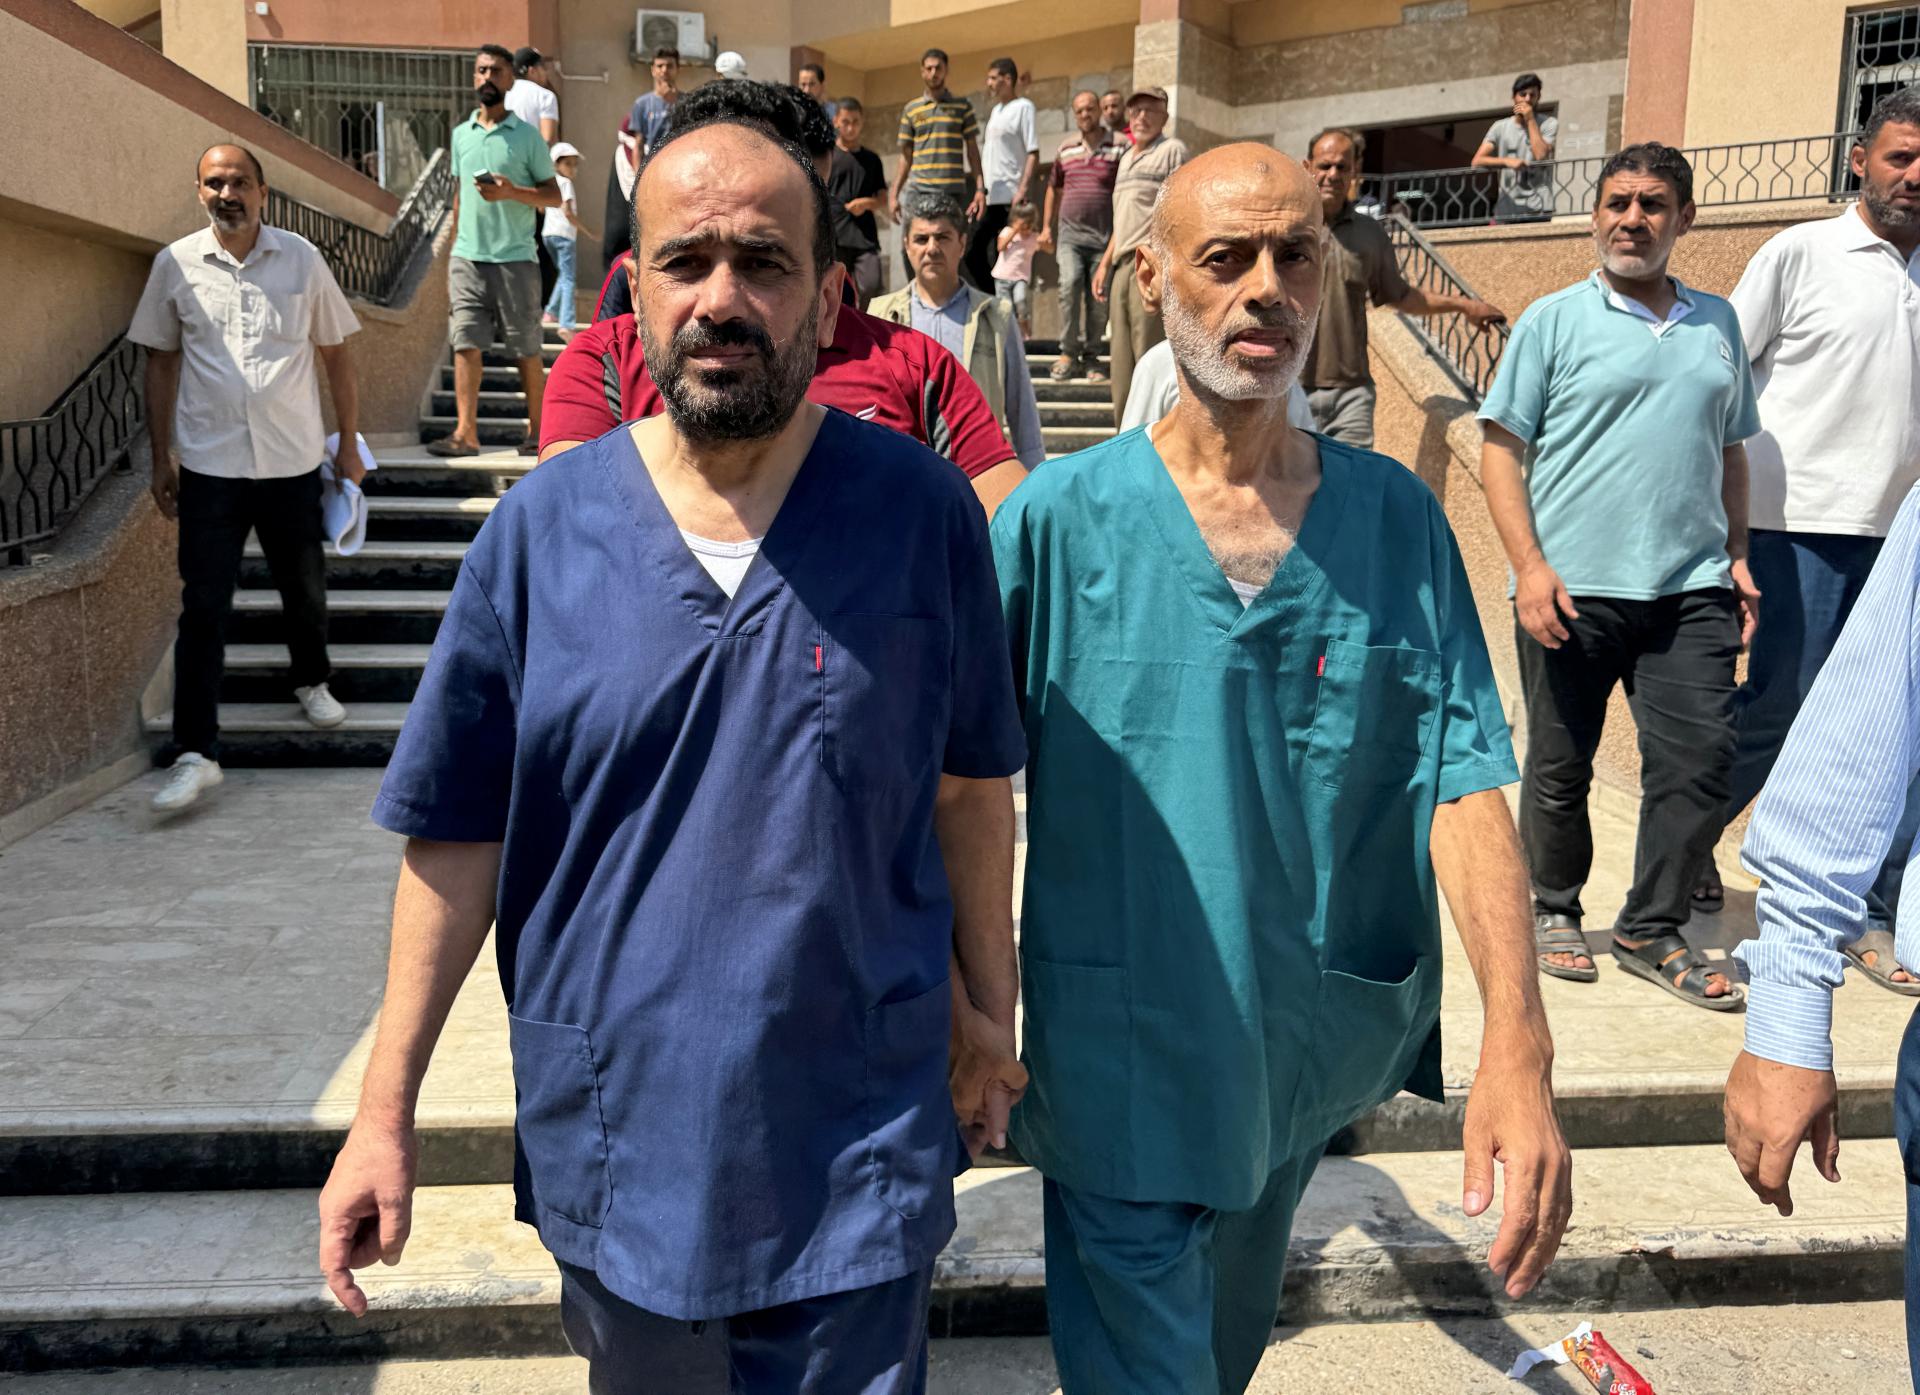 Izrael prepustil z väzby riaditeľa nemocnice Šifá, opozícia to kritizuje